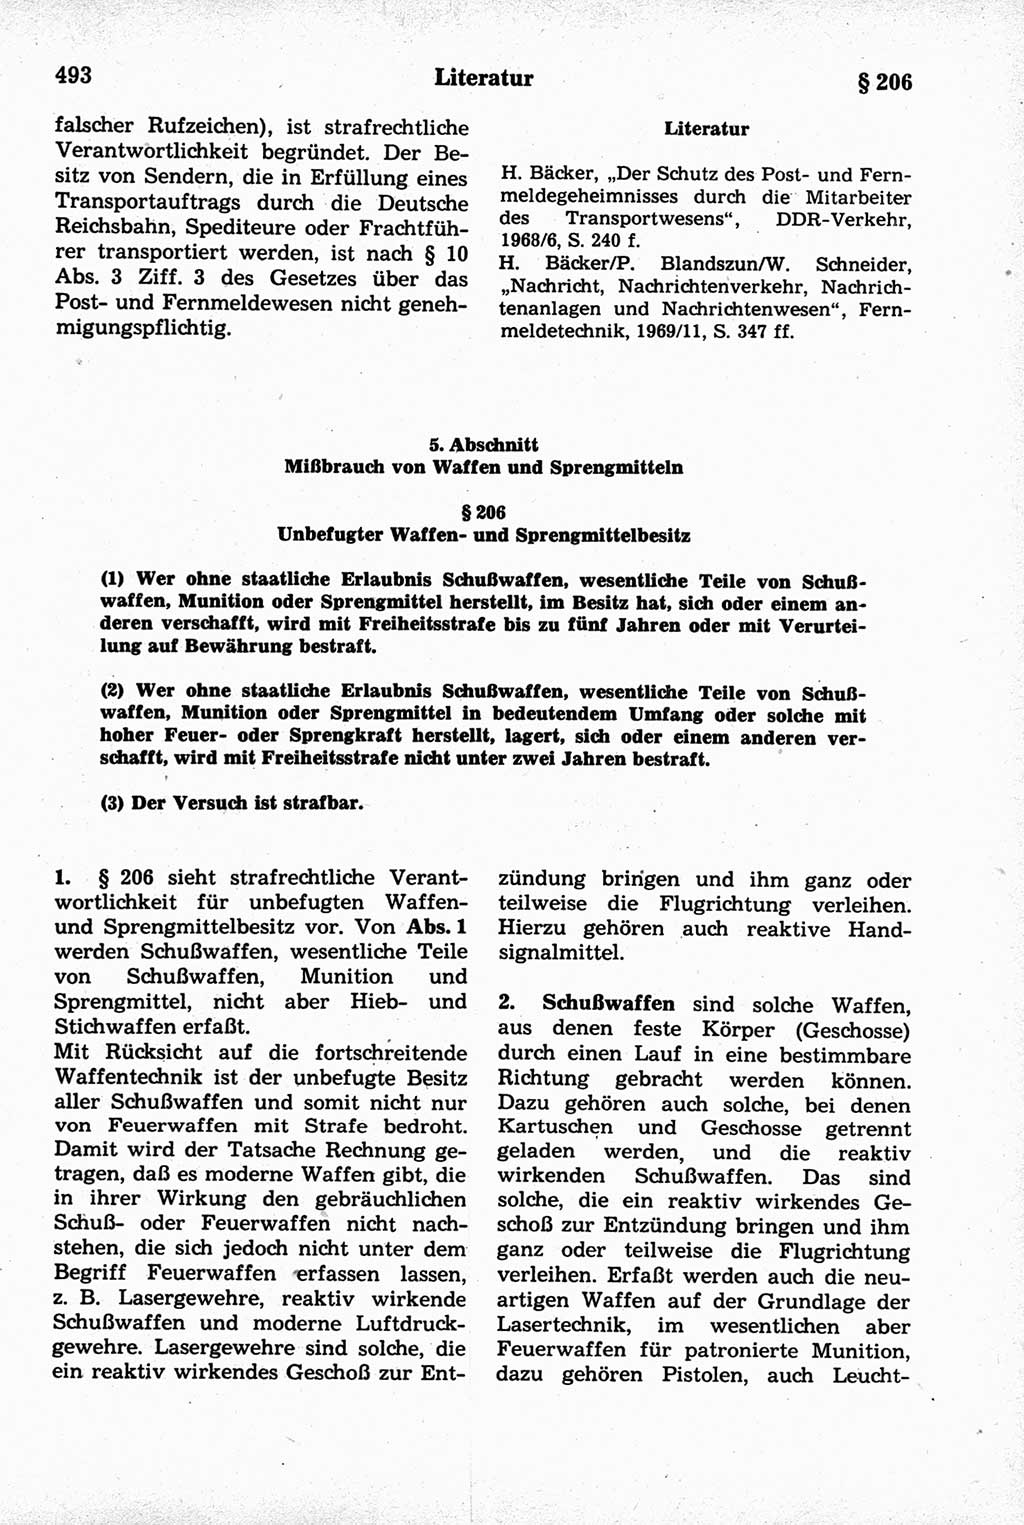 Strafrecht der Deutschen Demokratischen Republik (DDR), Kommentar zum Strafgesetzbuch (StGB) 1981, Seite 493 (Strafr. DDR Komm. StGB 1981, S. 493)